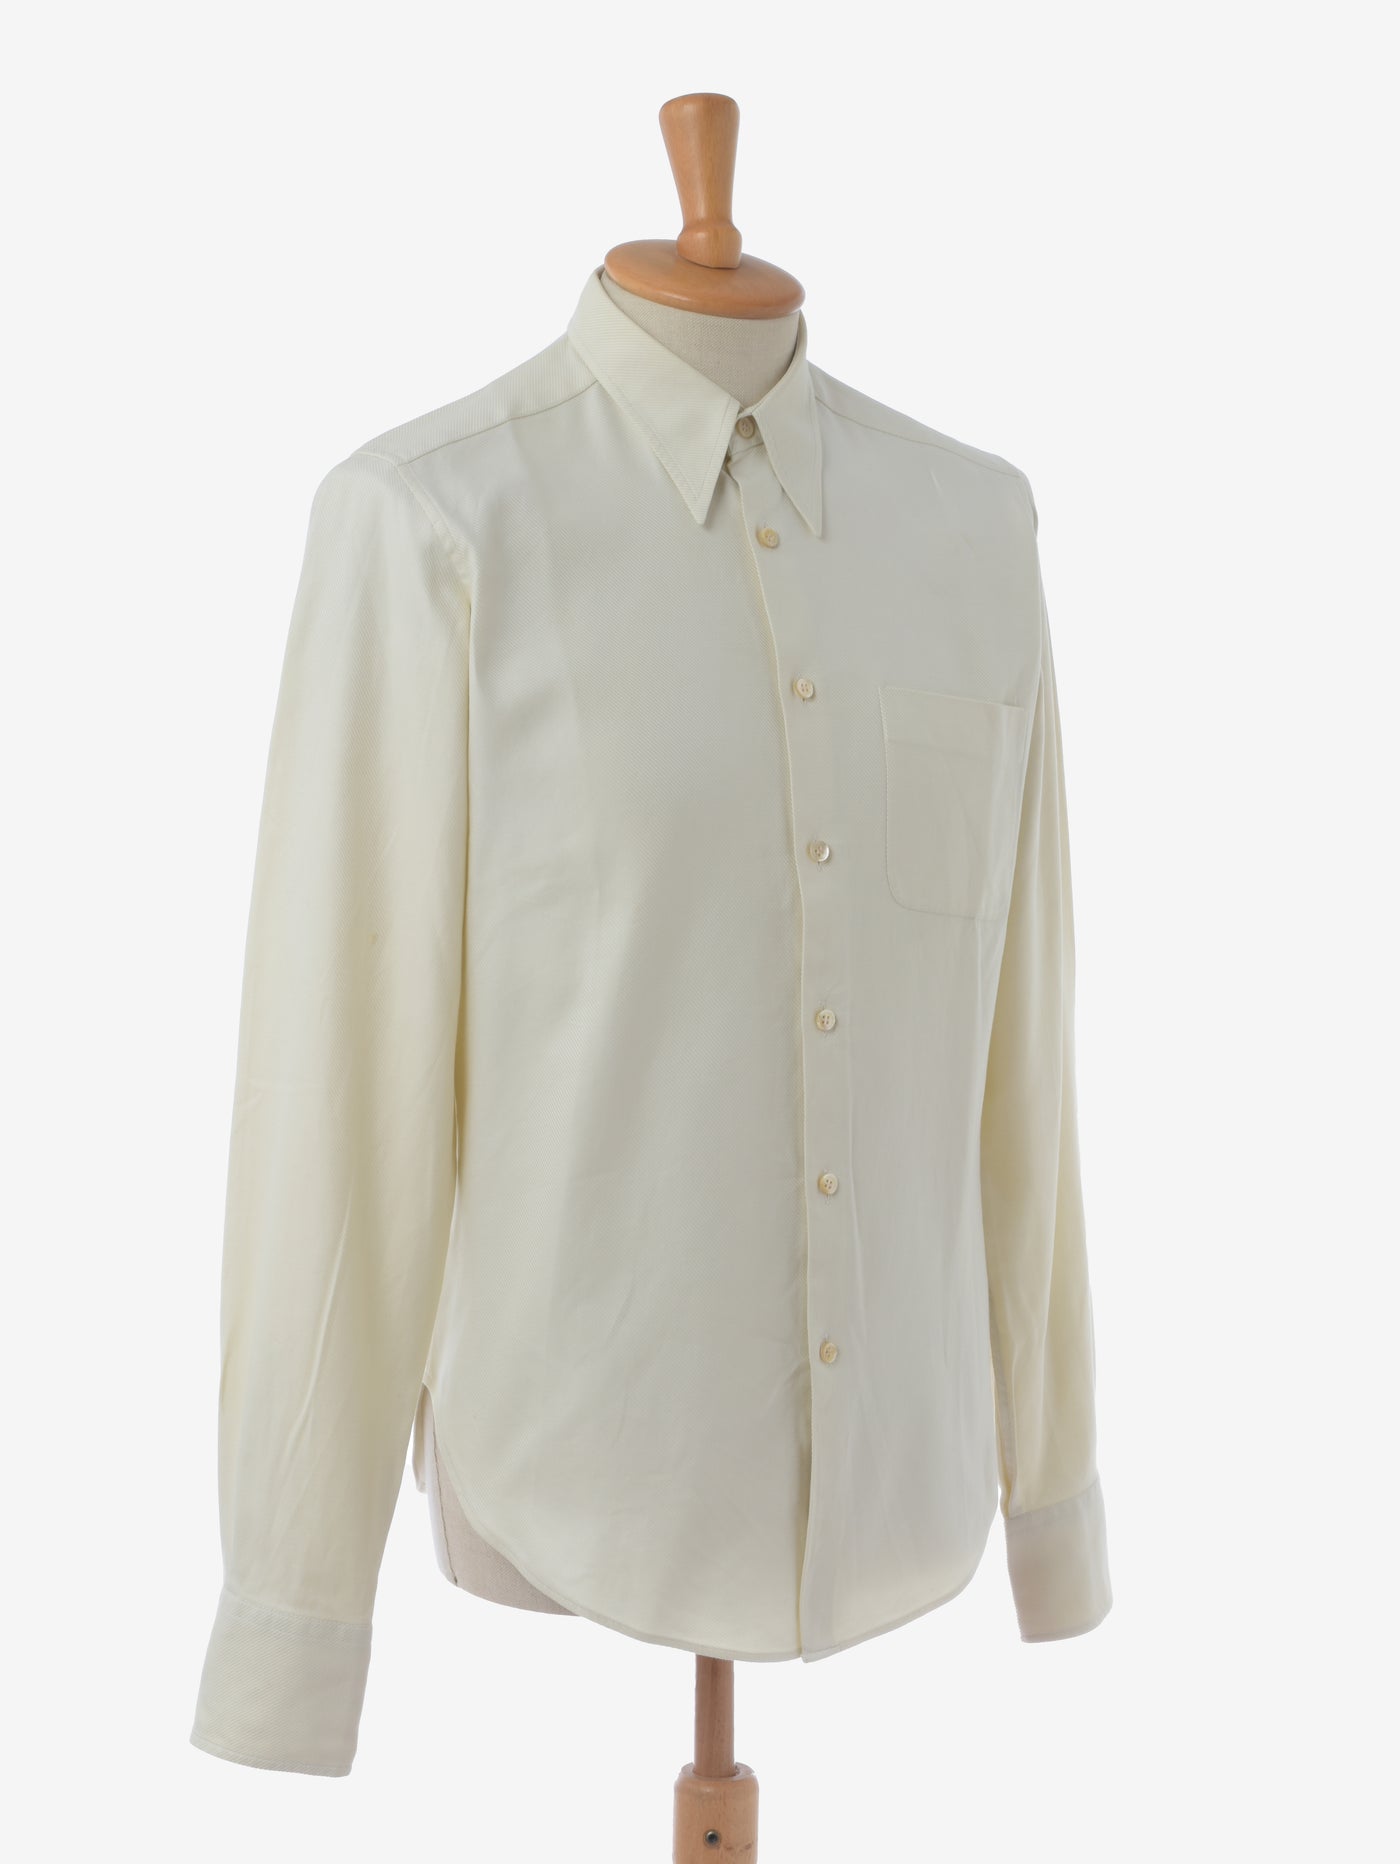 Romeo Gigli Cream White Shirt - '90s